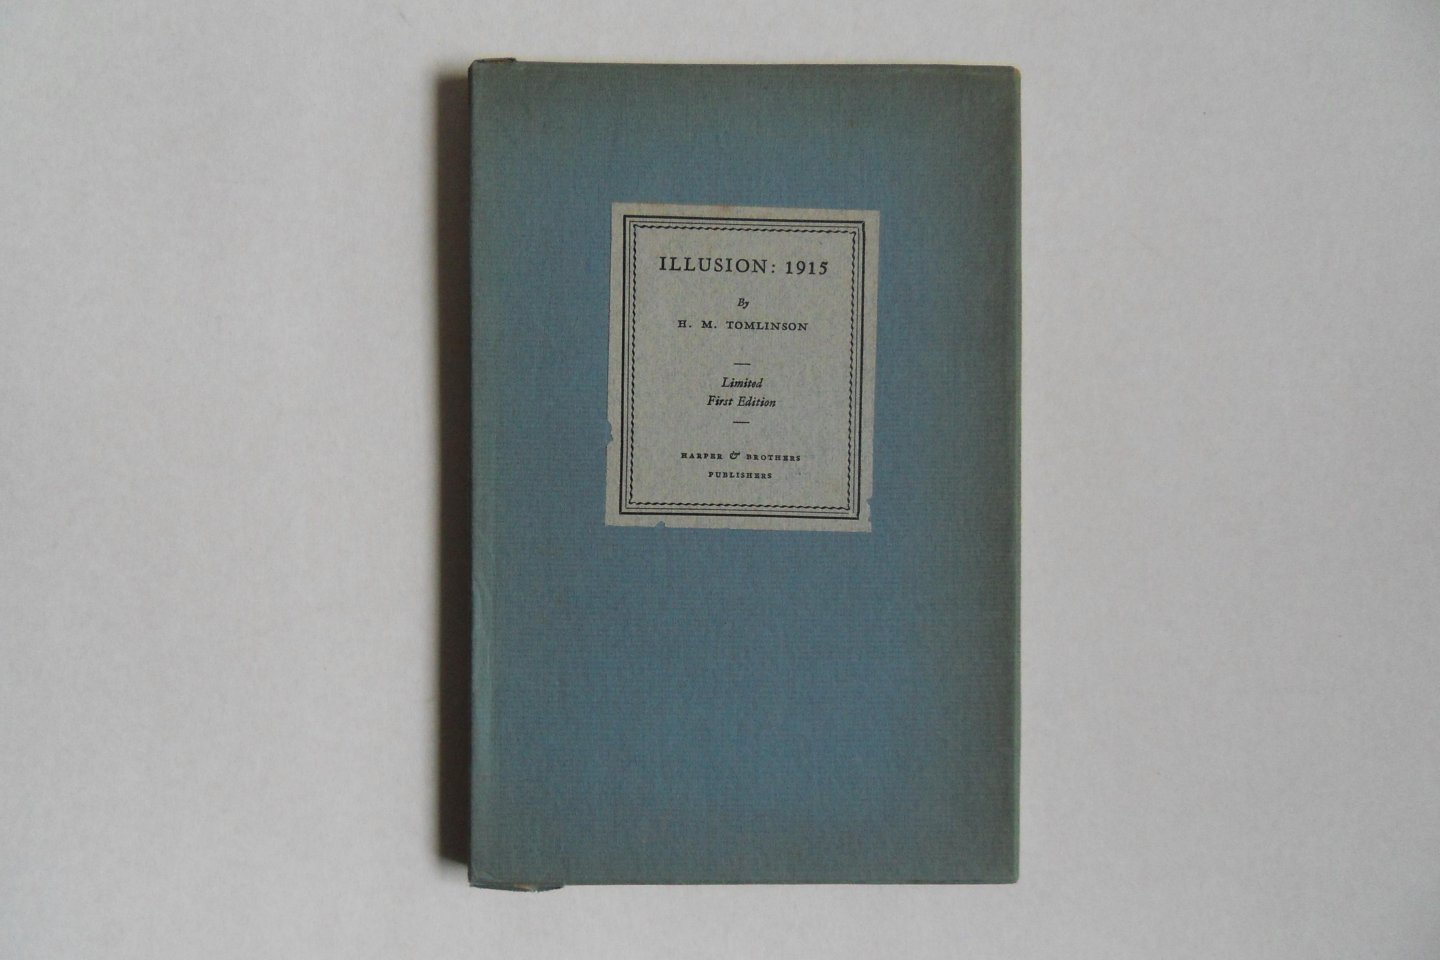 Tomlinson, H.M. [ Met uitgebreide handgeschreven opdracht van de auteur ]. - Illusion: 1915. [ Limited first edition, aantal niet vermeld ].- Reprinted from Harpers Magazine.